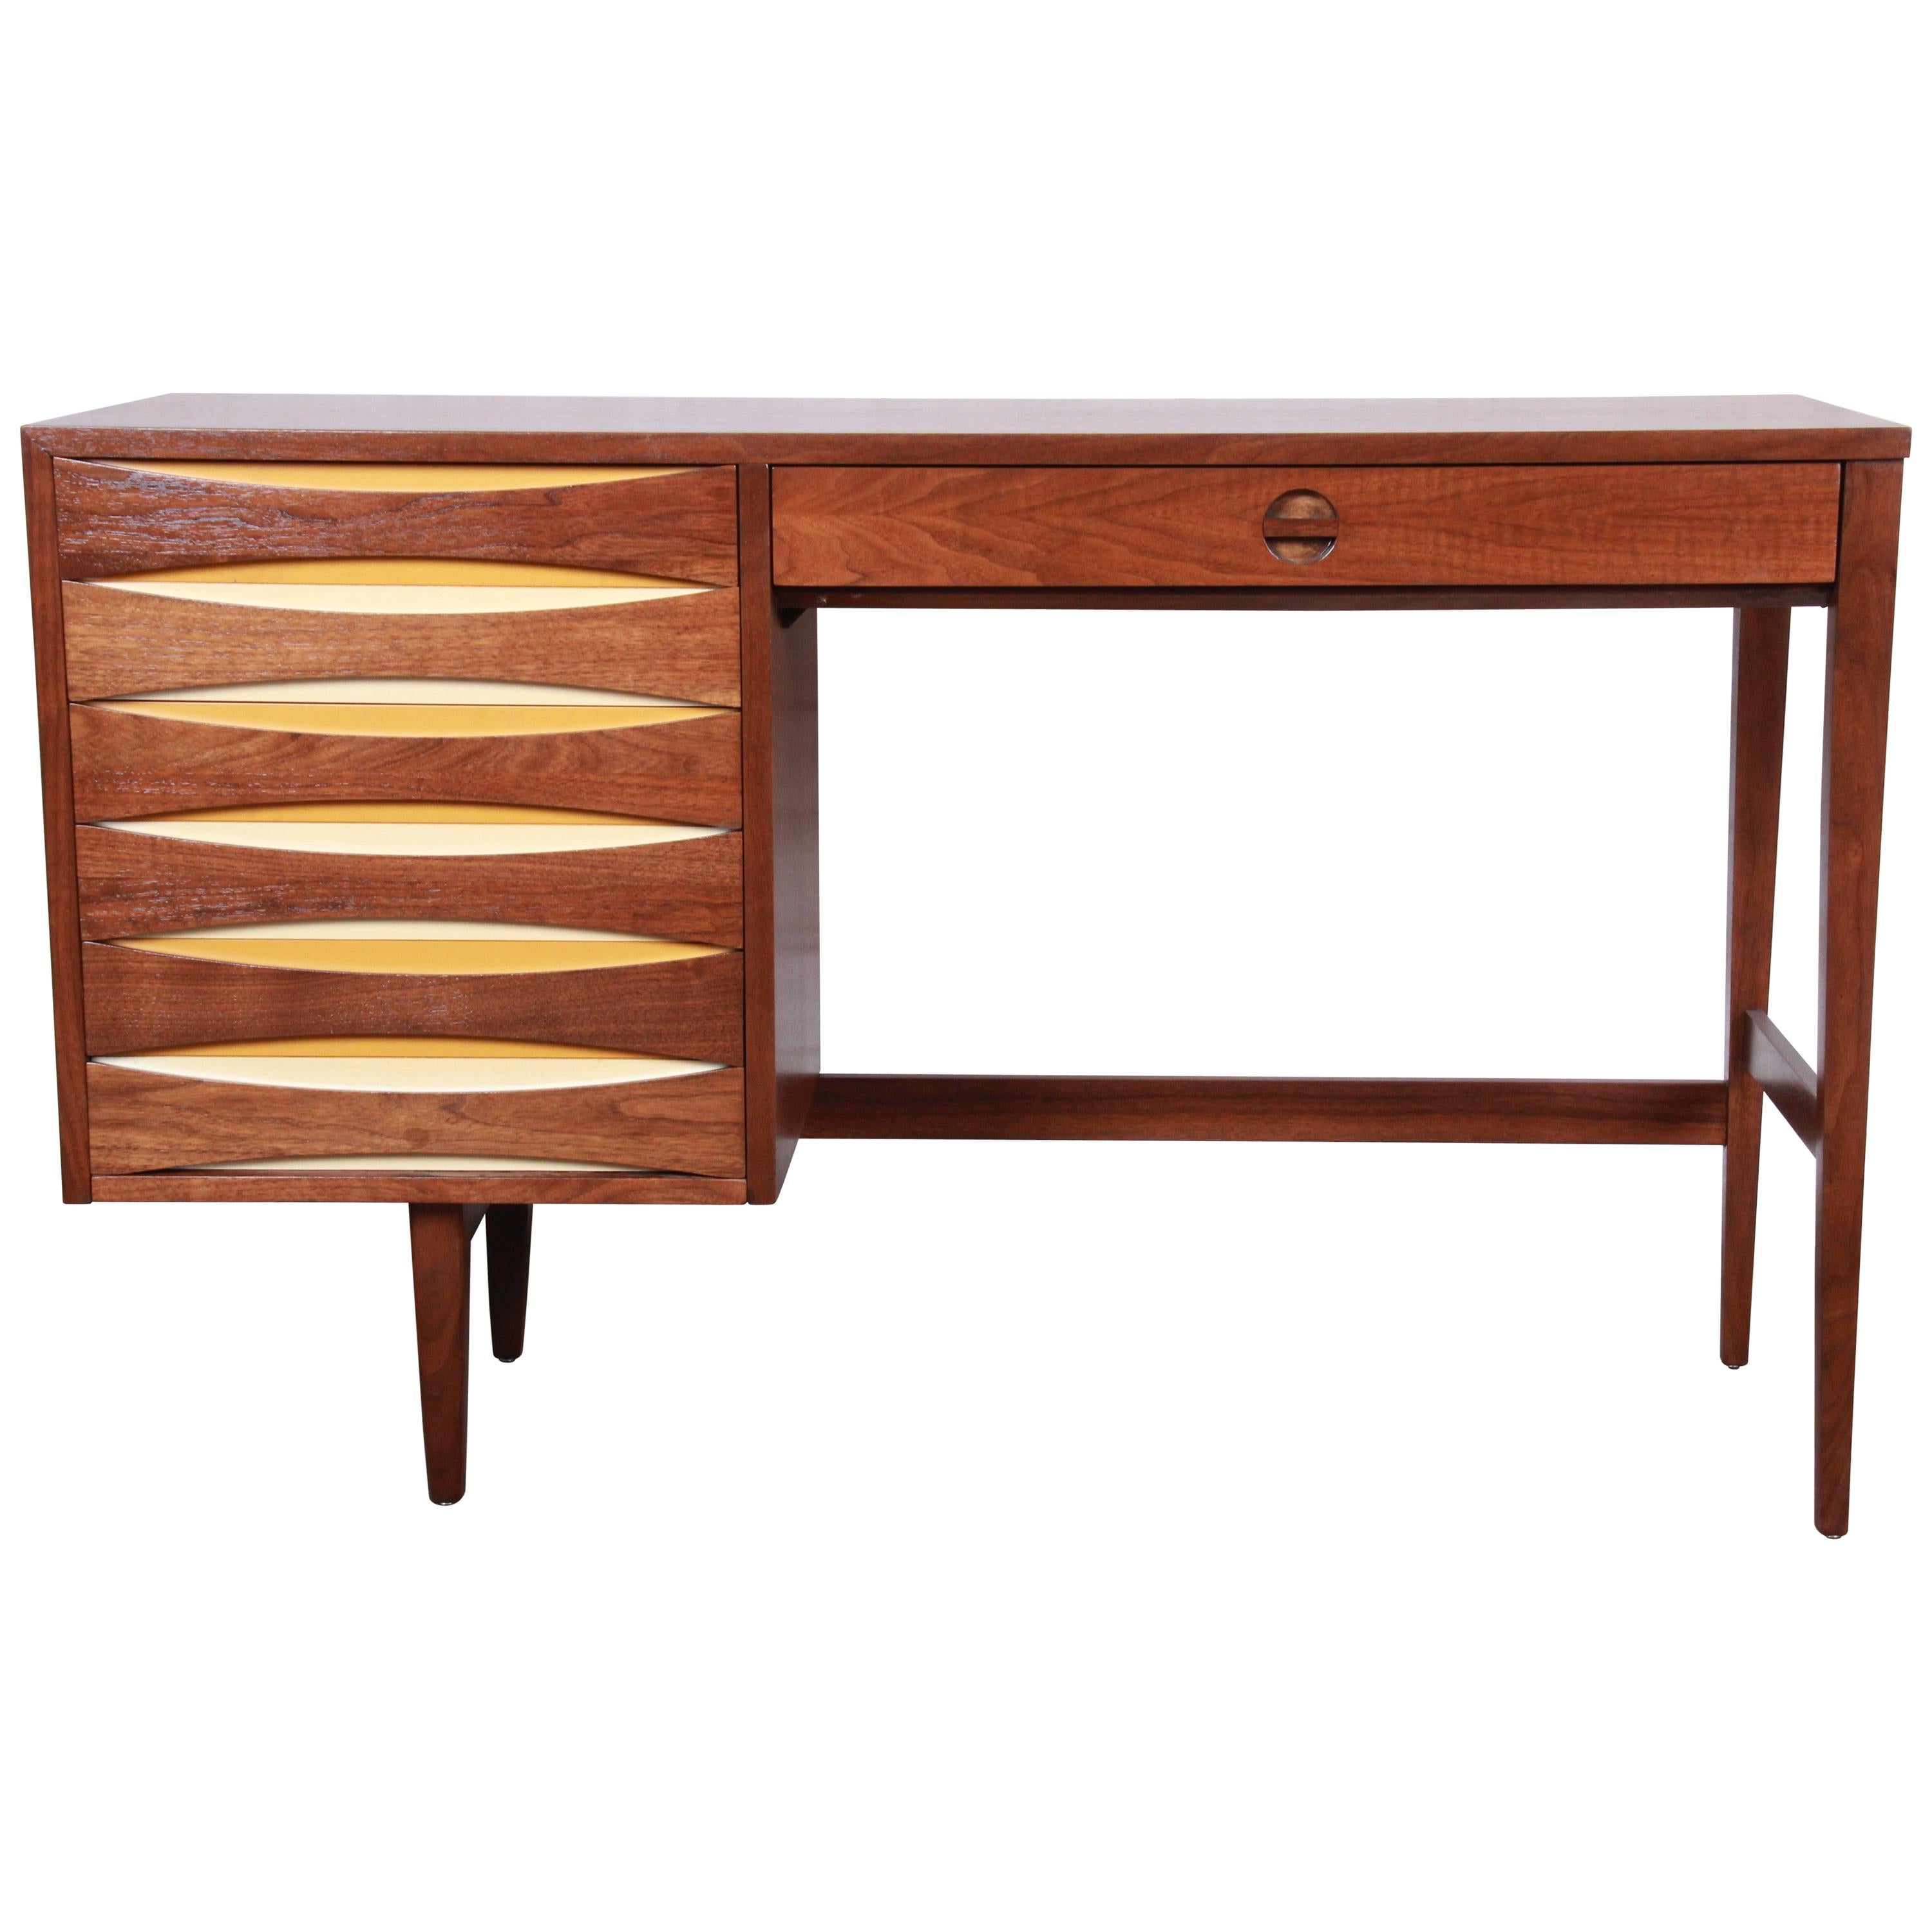 Arne Vodder Style Mid-Century Modern Walnut Desk, Newly Restored